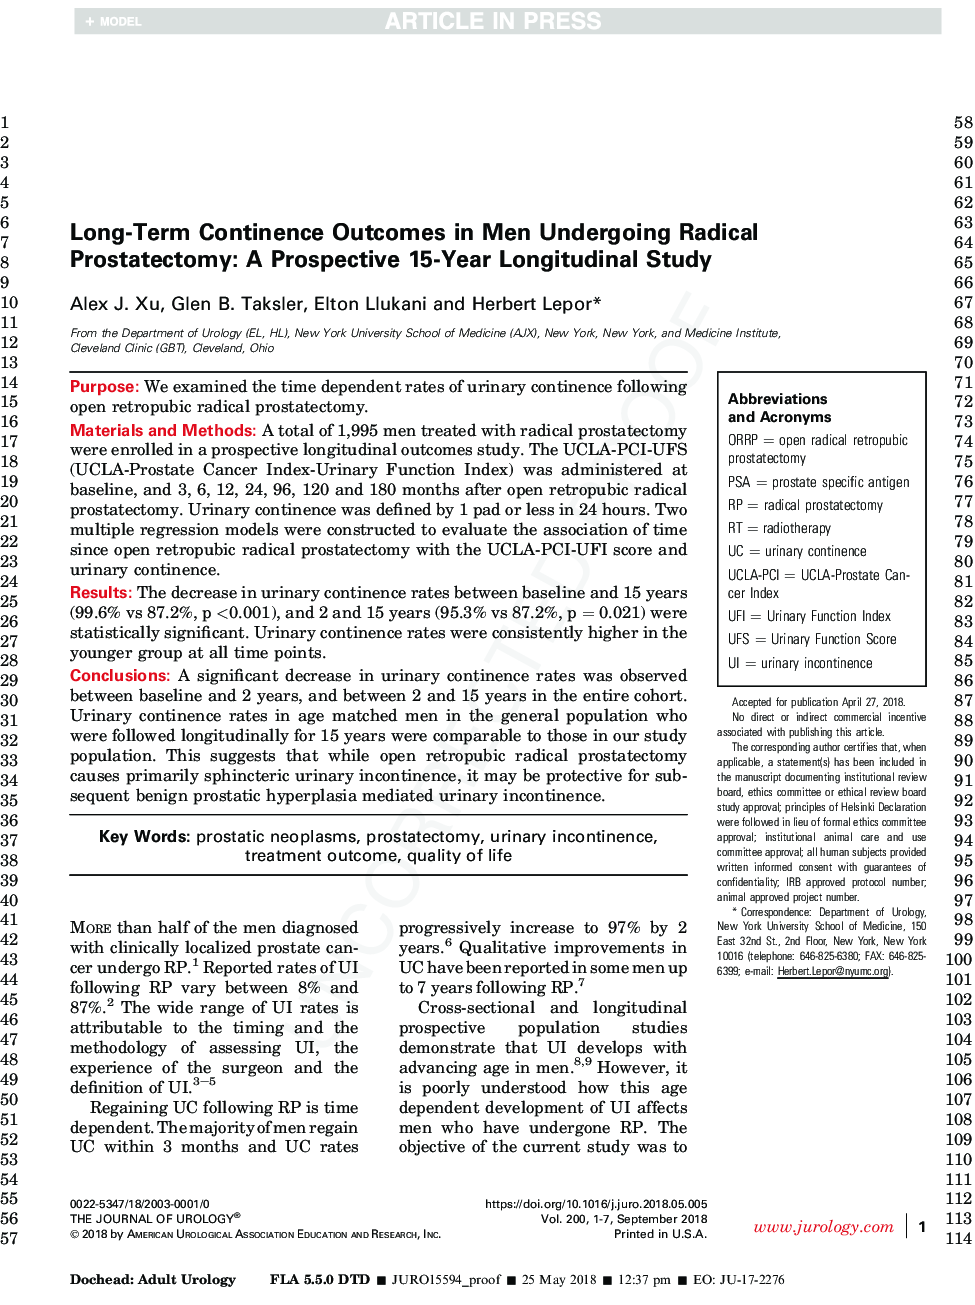 نتایج پایدار طولانی مدت در افراد مبتلا به پروستاتکتومی رادیکال: یک مطالعه طولی مدت 15 ساله 